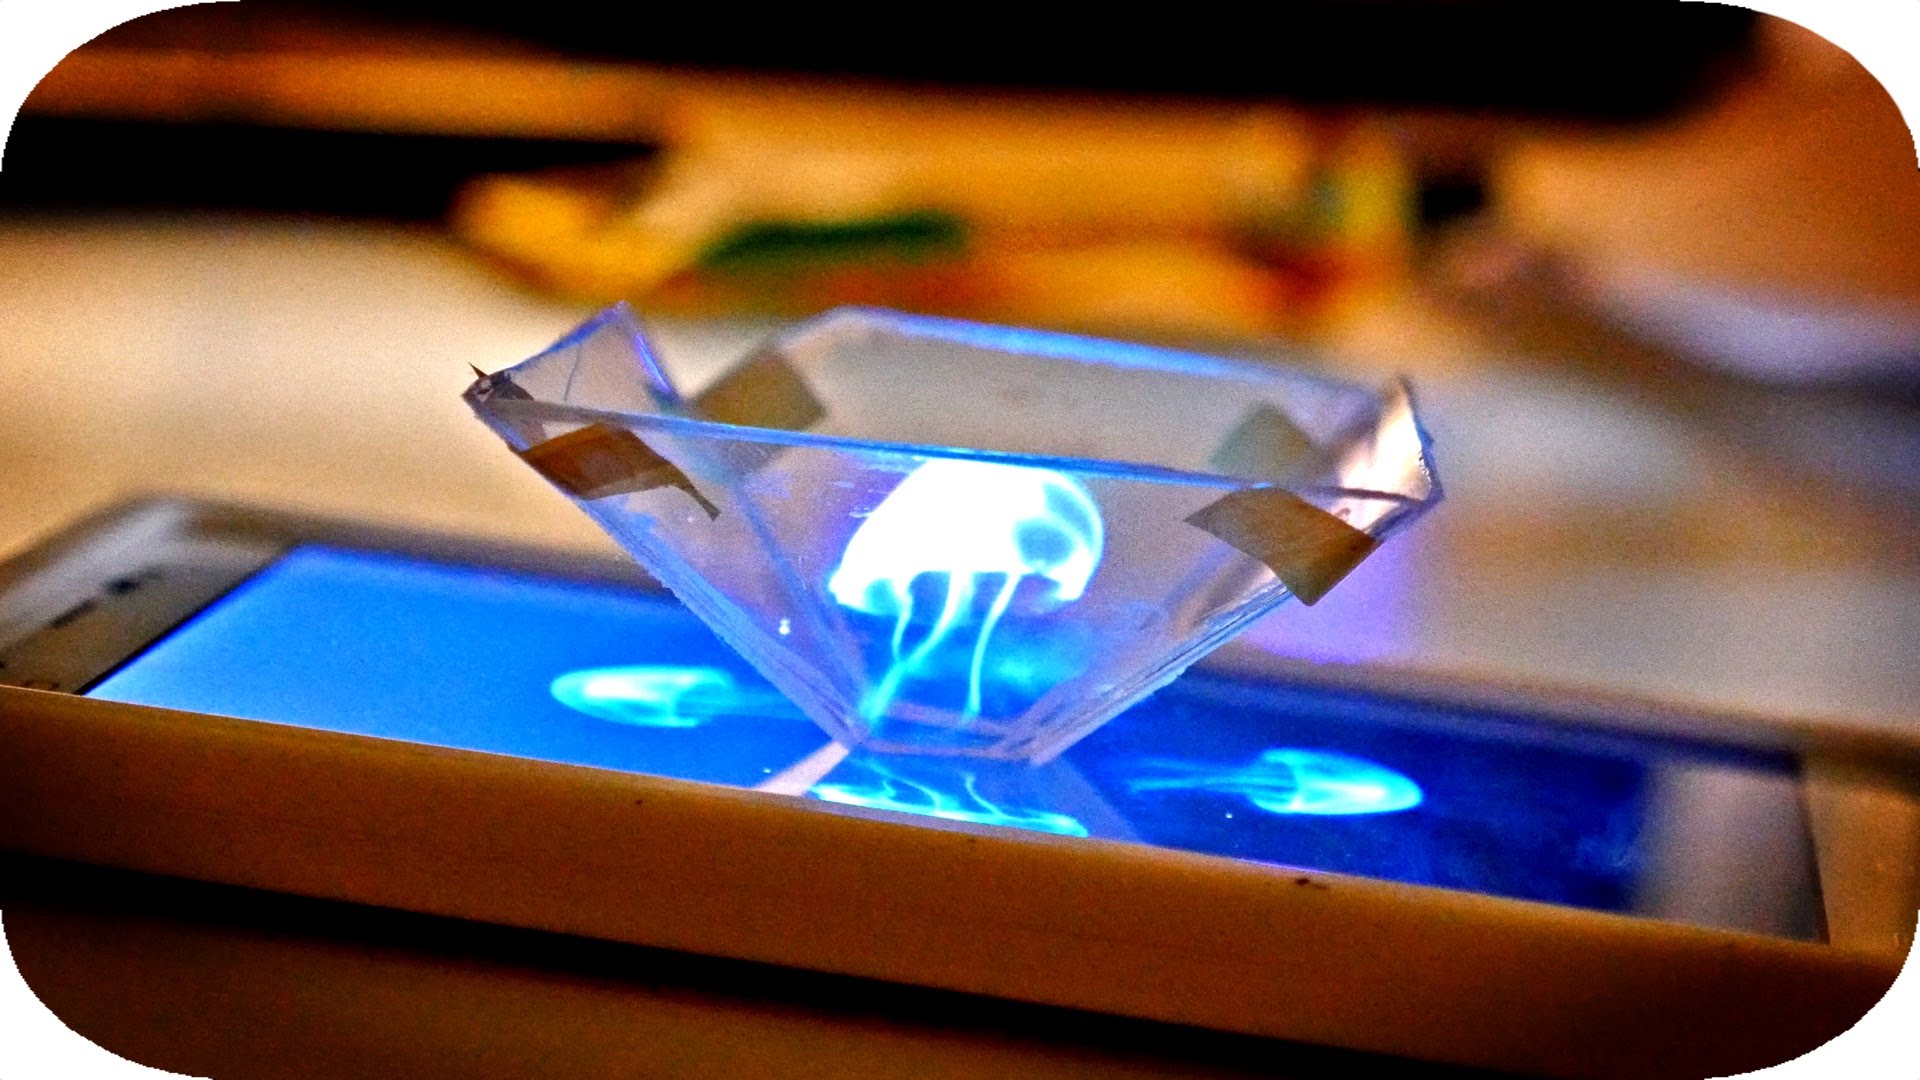 Créez des hologrammes avec votre téléphone et un boitier de CD